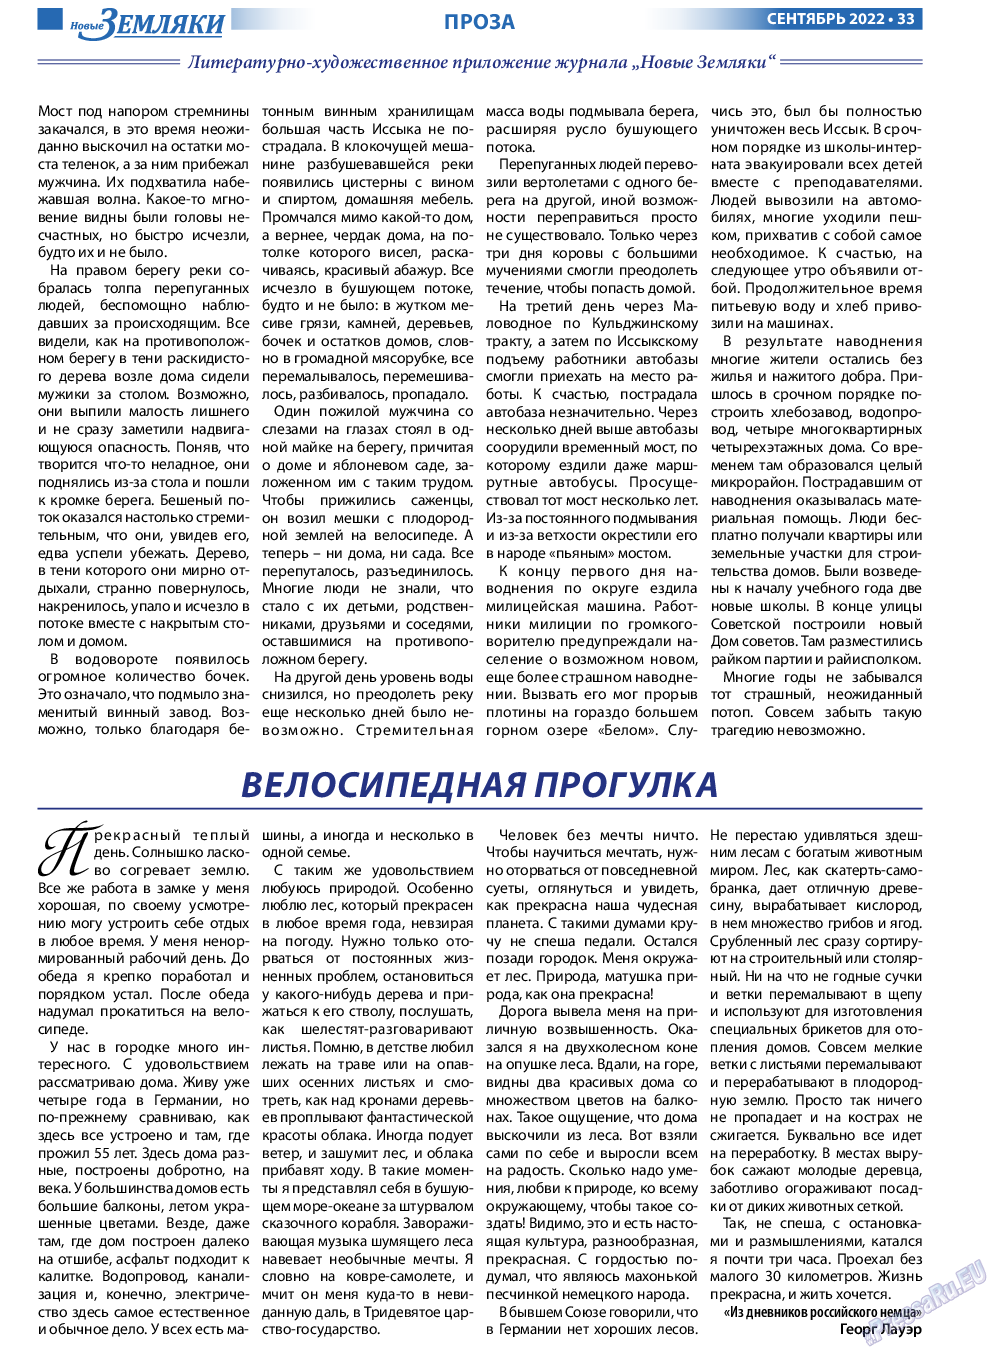 Новые Земляки, газета. 2022 №9 стр.33